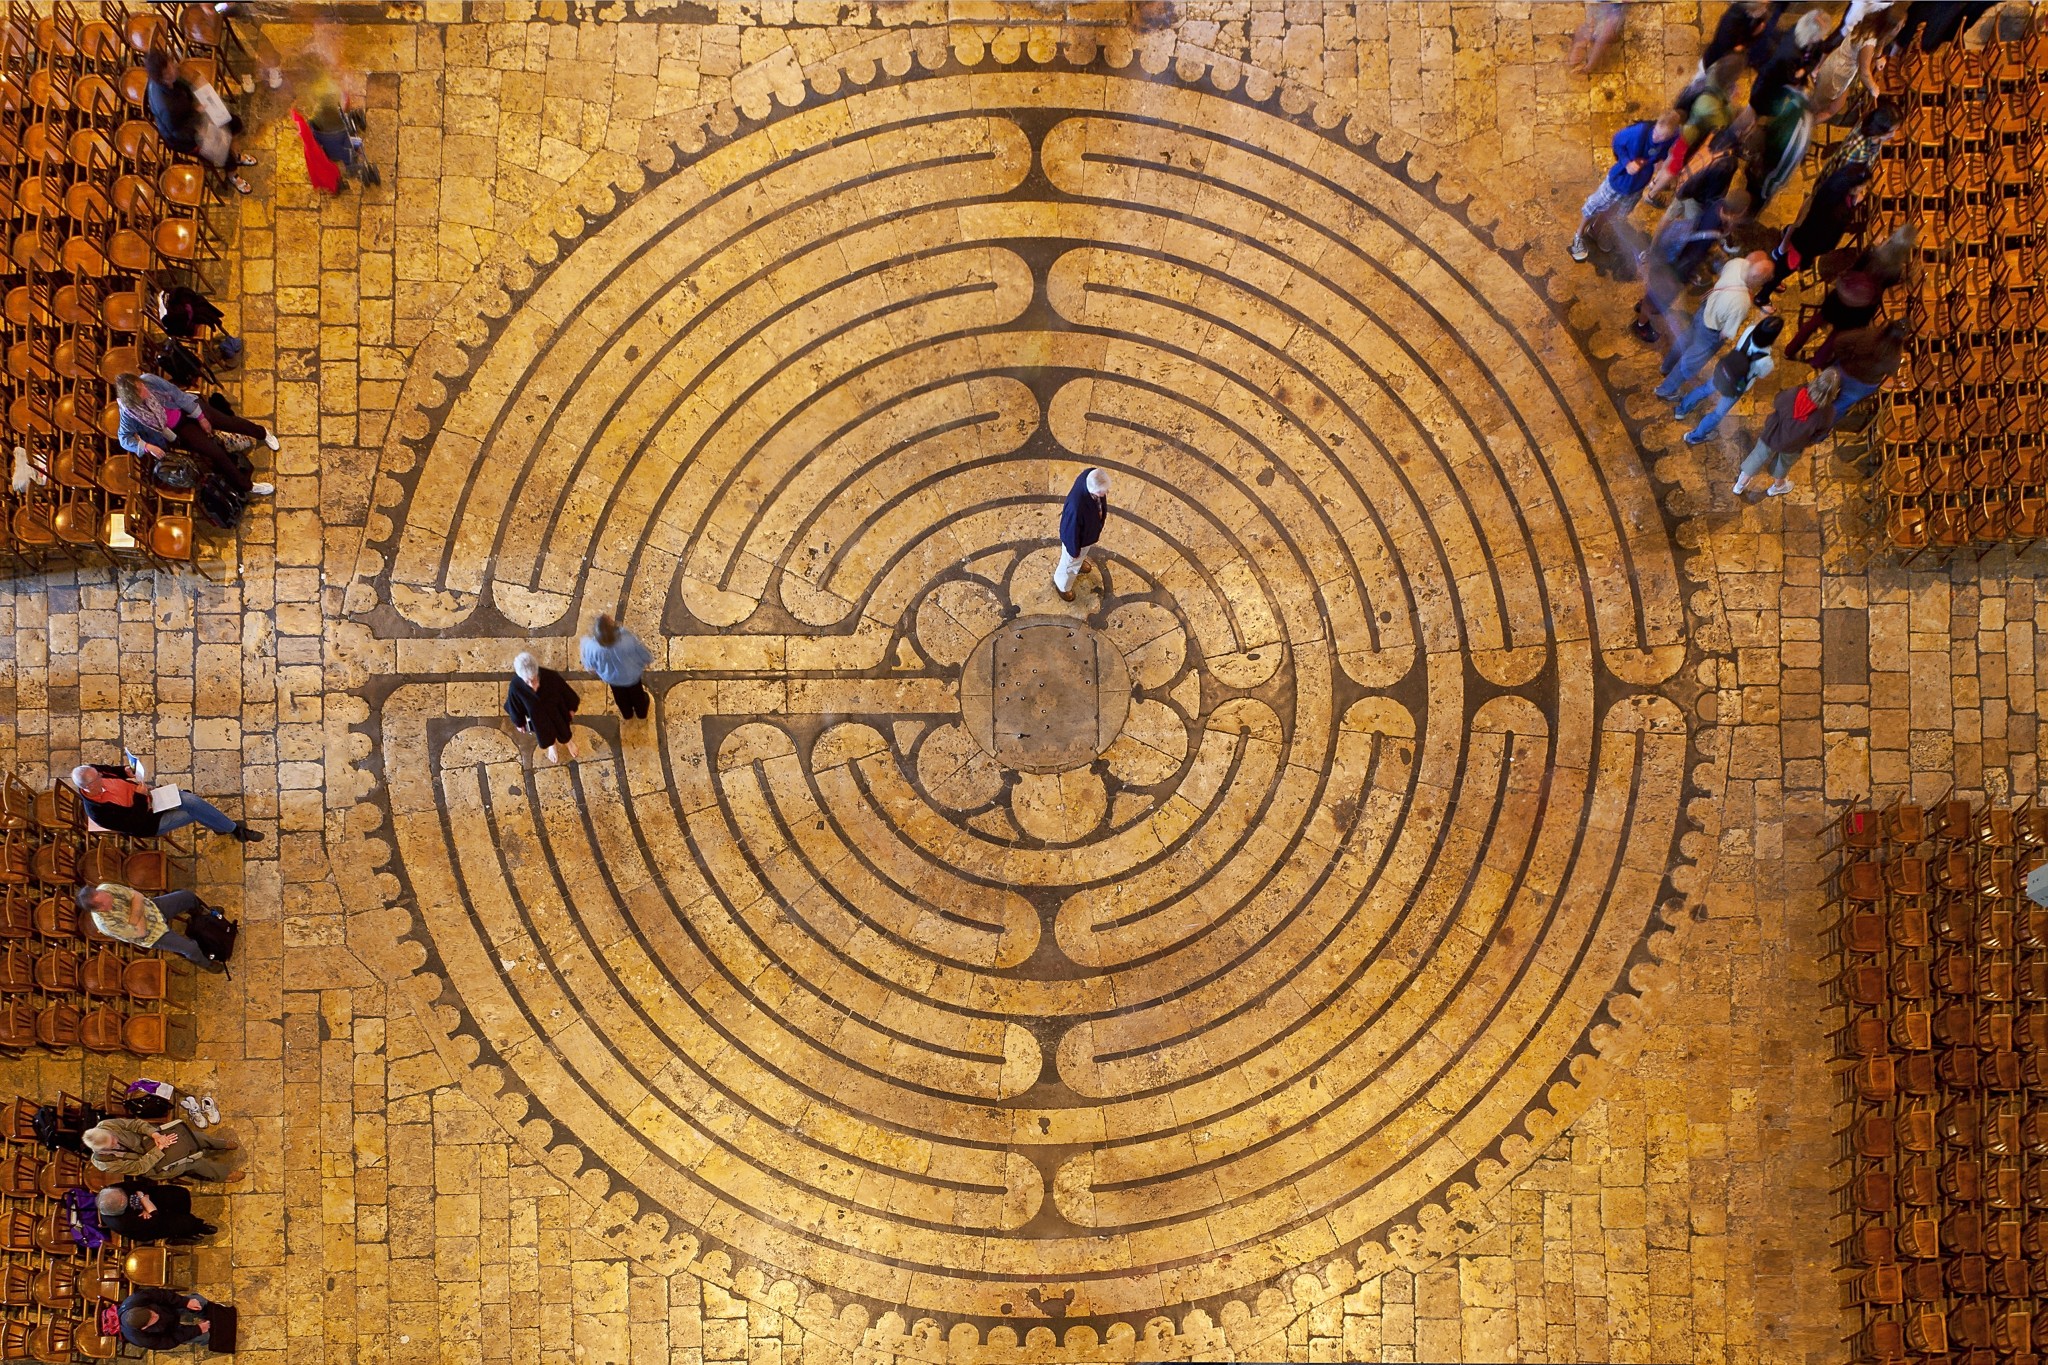 A walk through the Labyrinth at Bandon Dunes